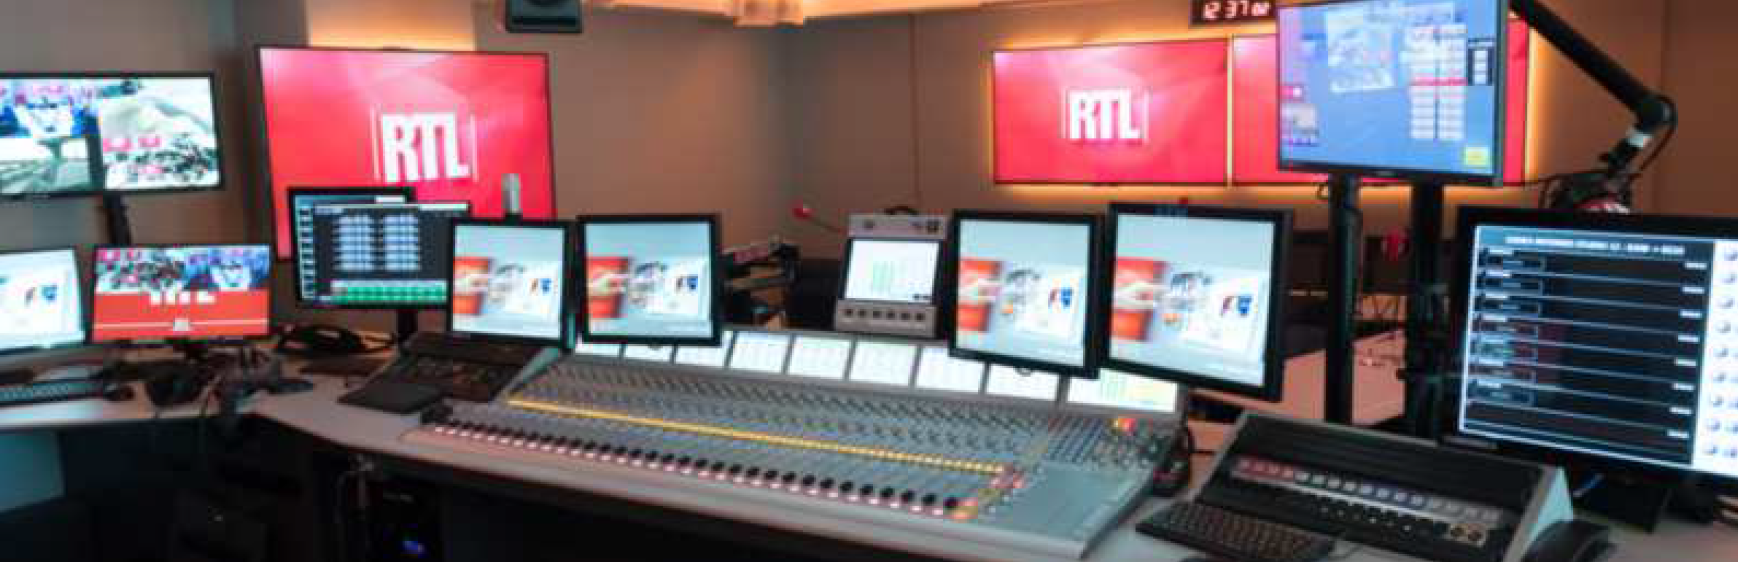 RTL : une rentrée à vivre de l'intérieur pour les auditeurs